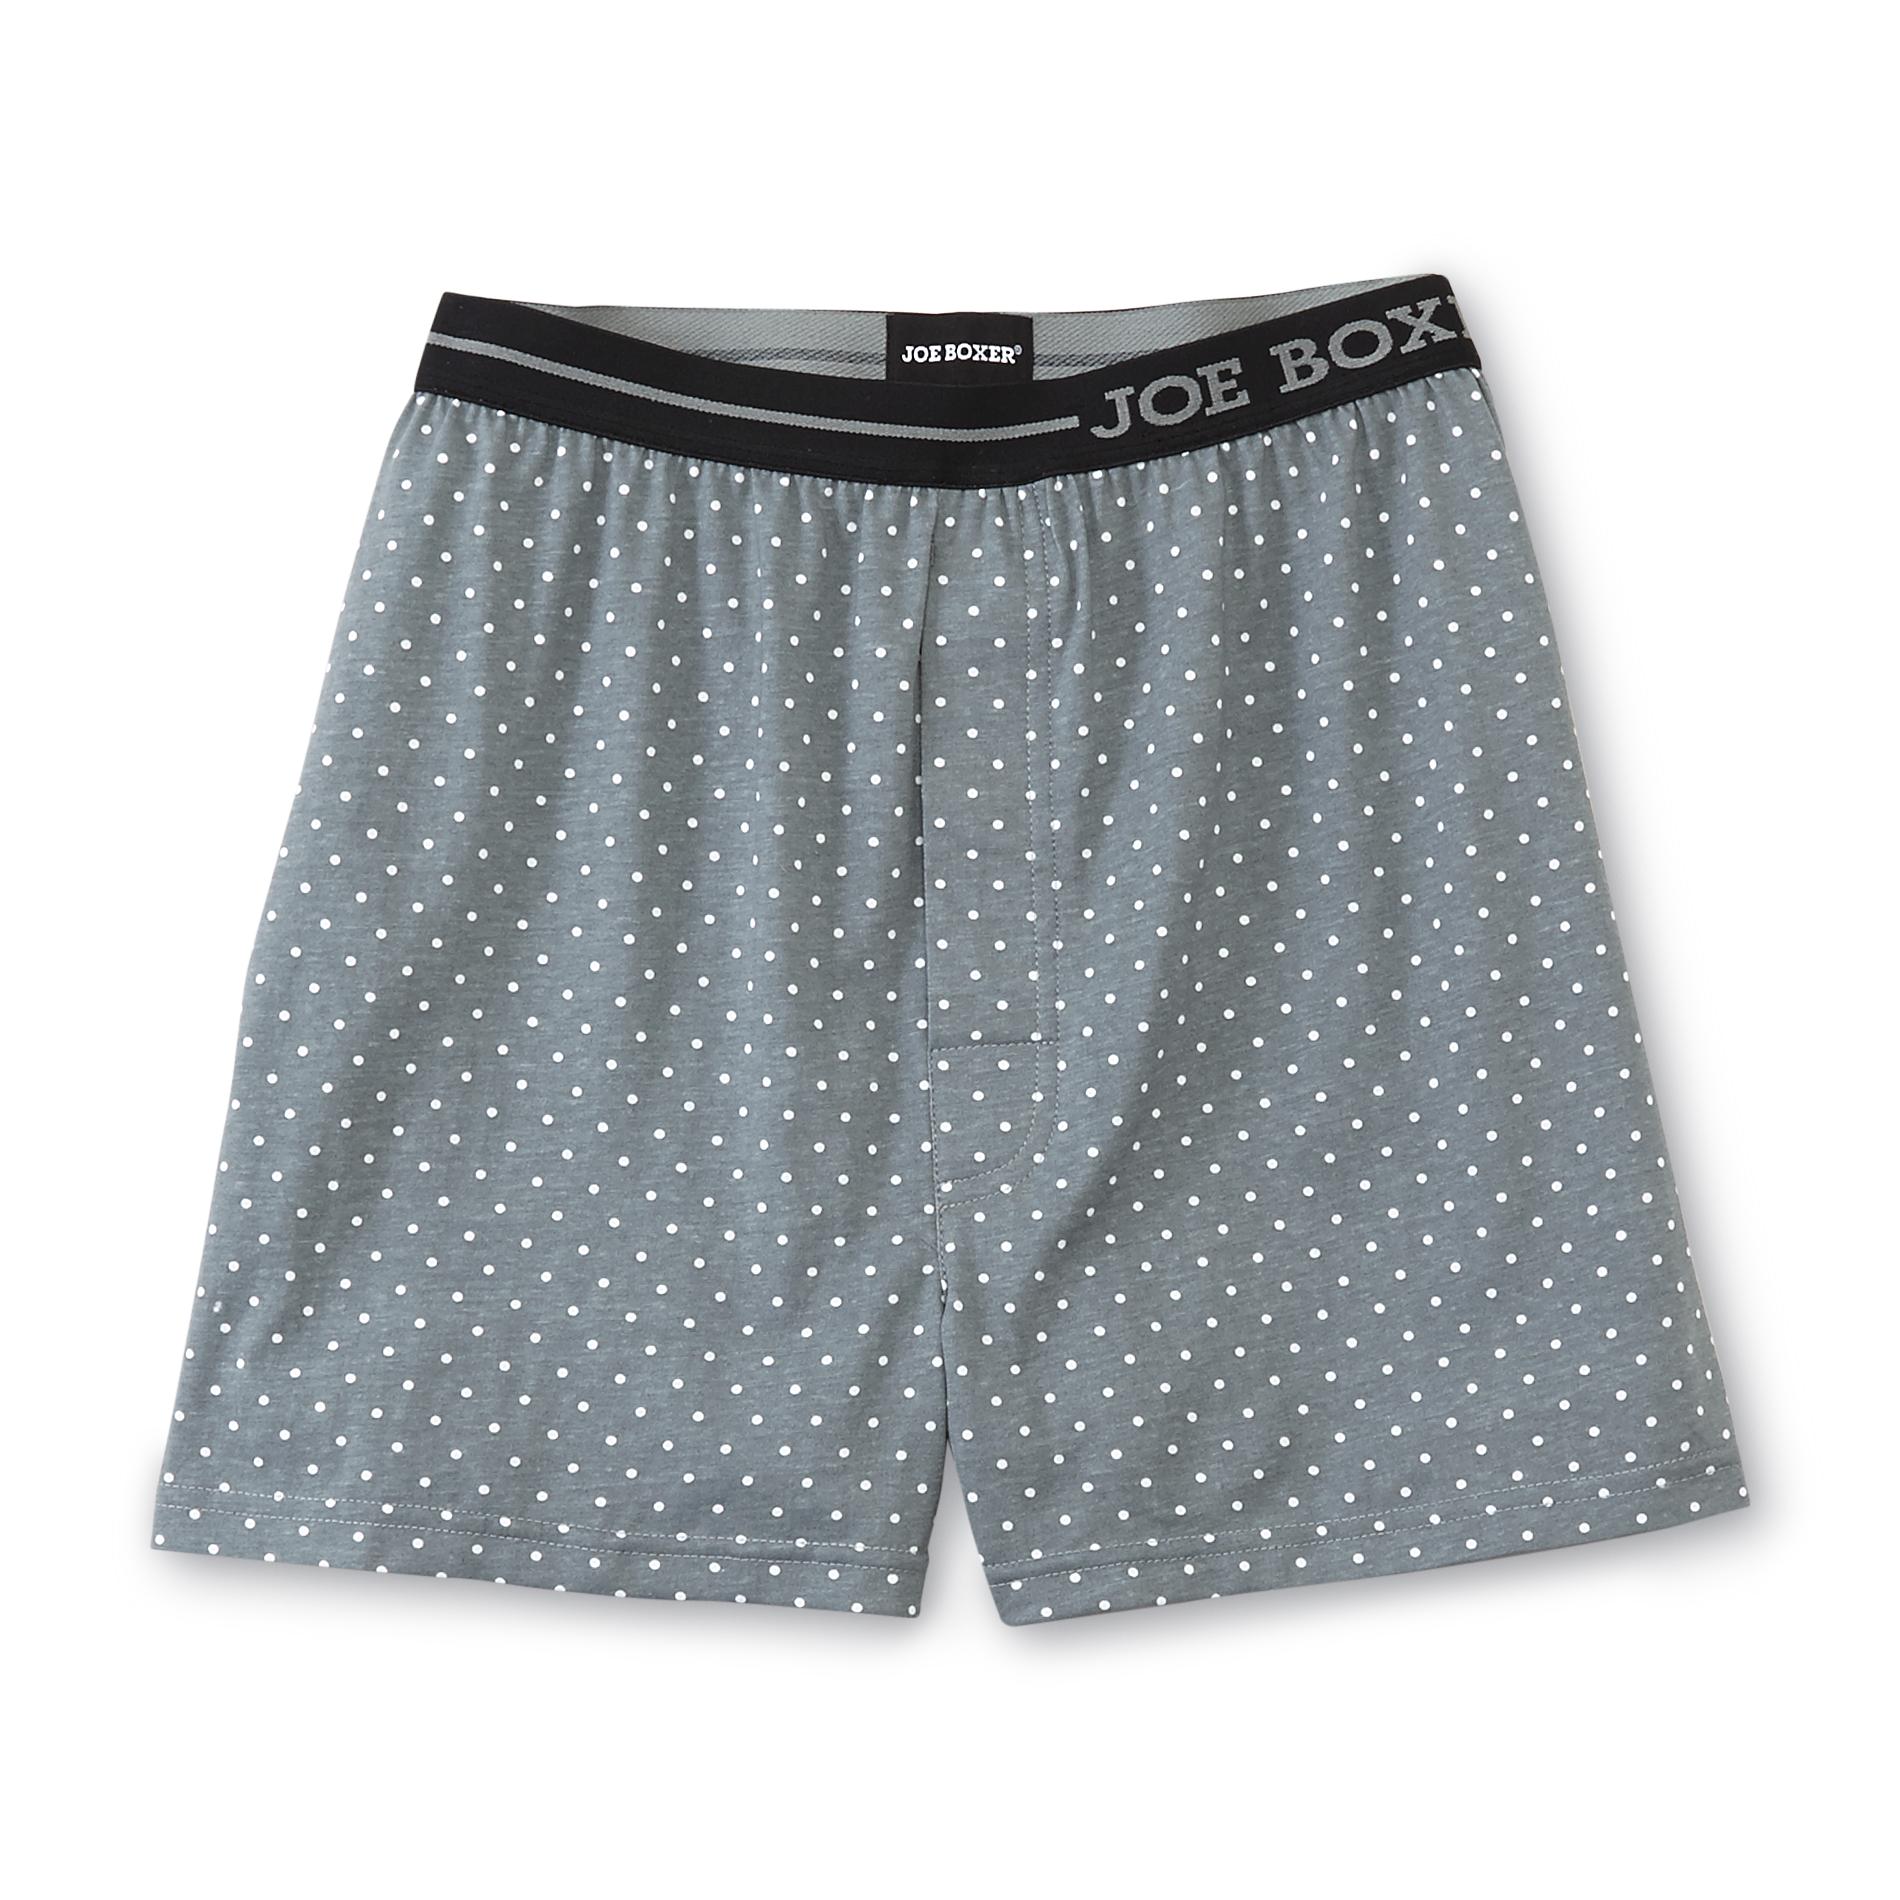 Joe Boxer Men's Knit Boxer Shorts - Polka Dot